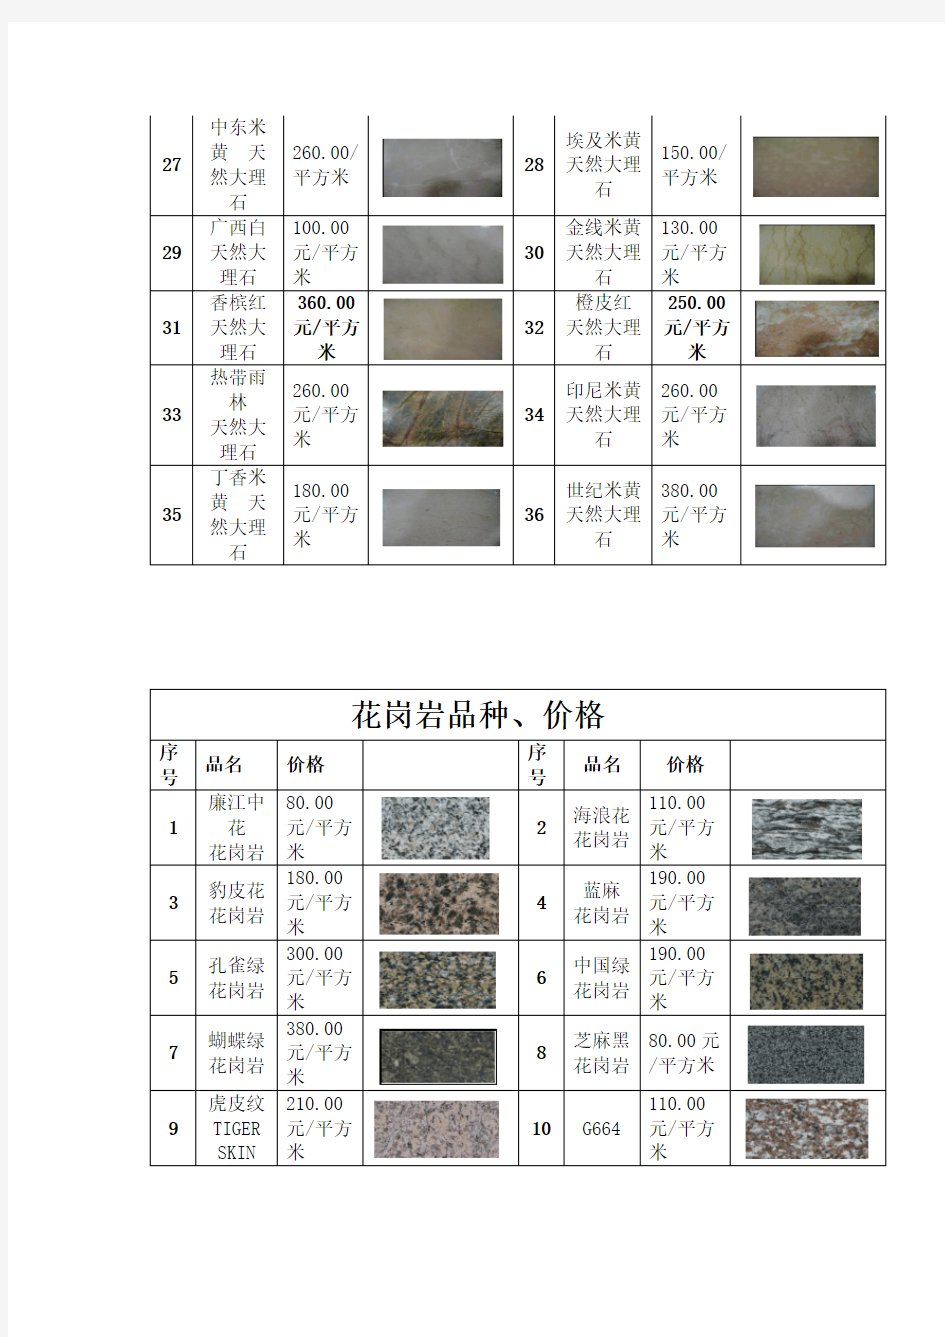 大理石,花岗岩品种、价格(附图片)